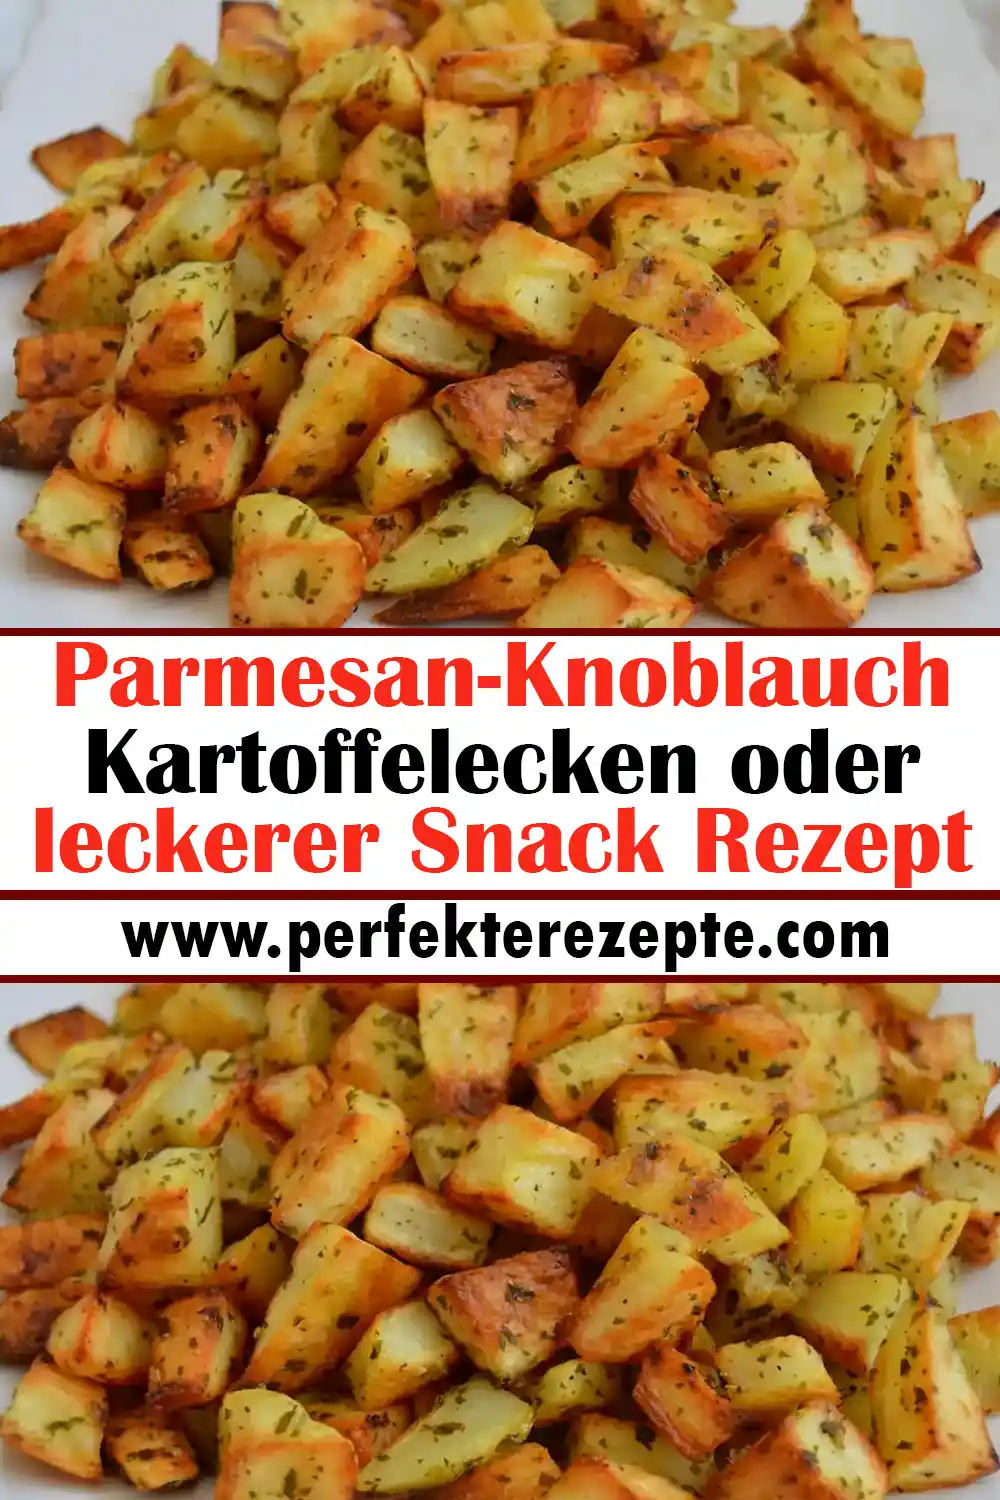 Parmesan-Knoblauch-Kartoffelecken oder leckerer Snack Rezept